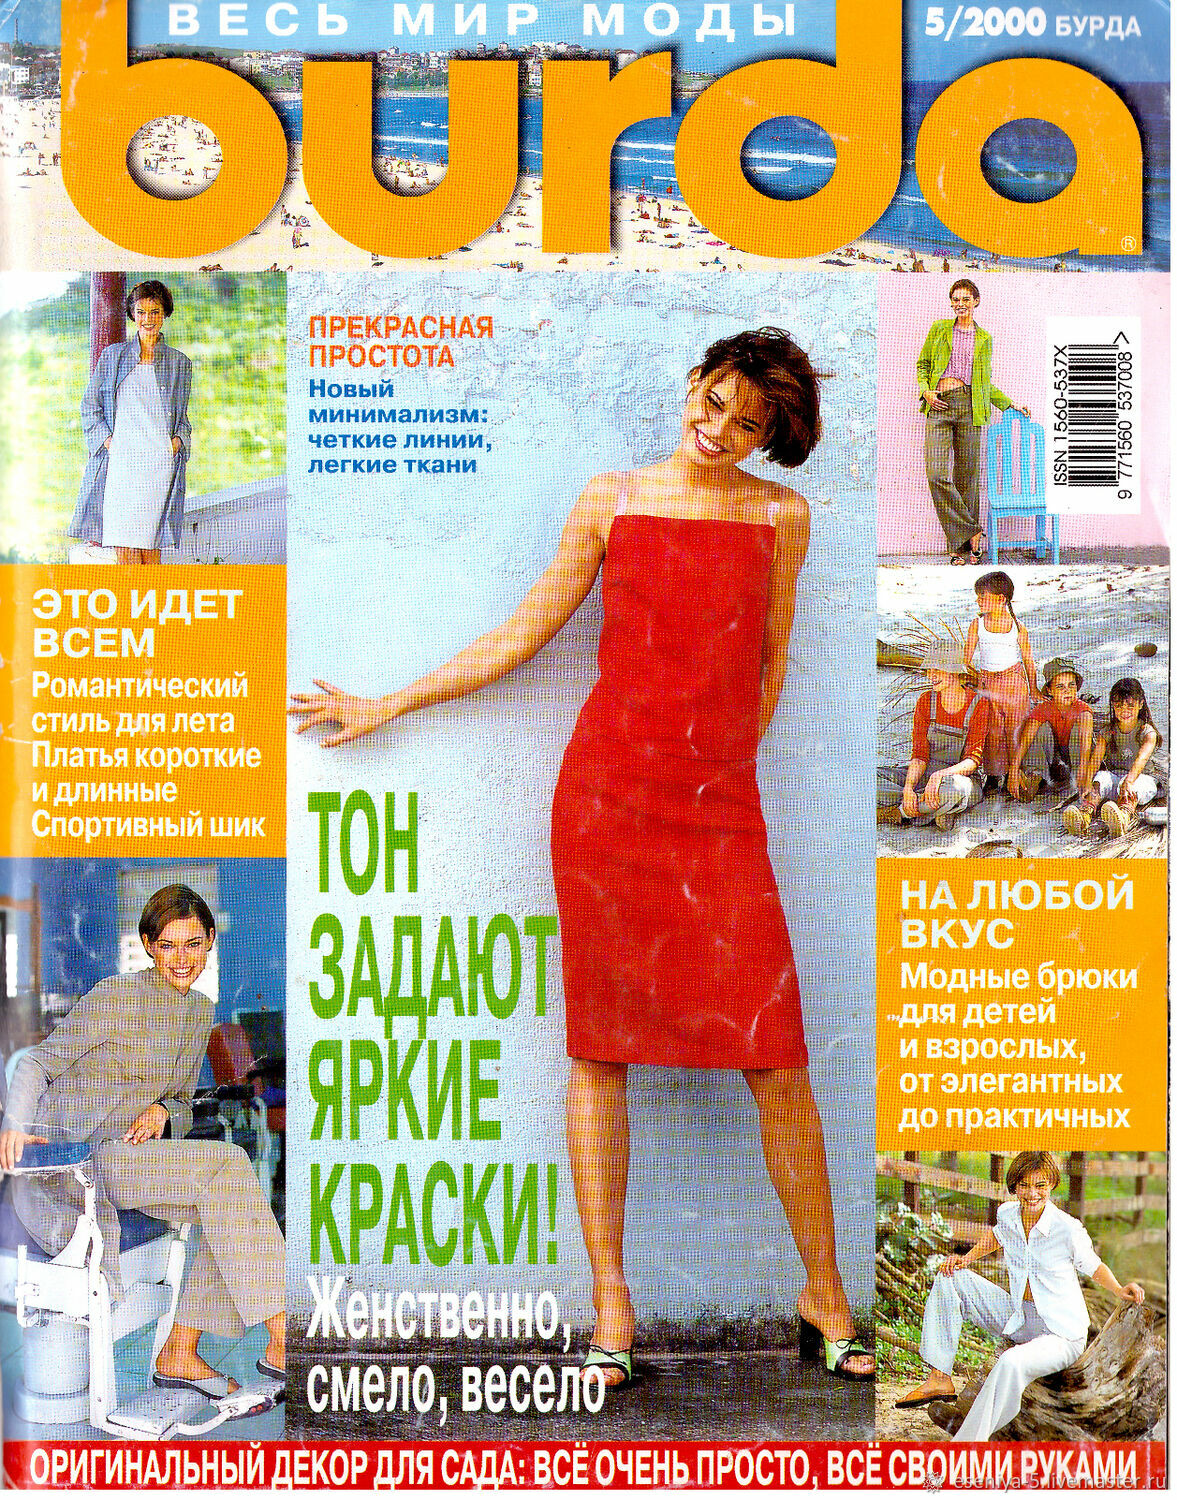 Как журнал Burda перевернул мир советских женщин